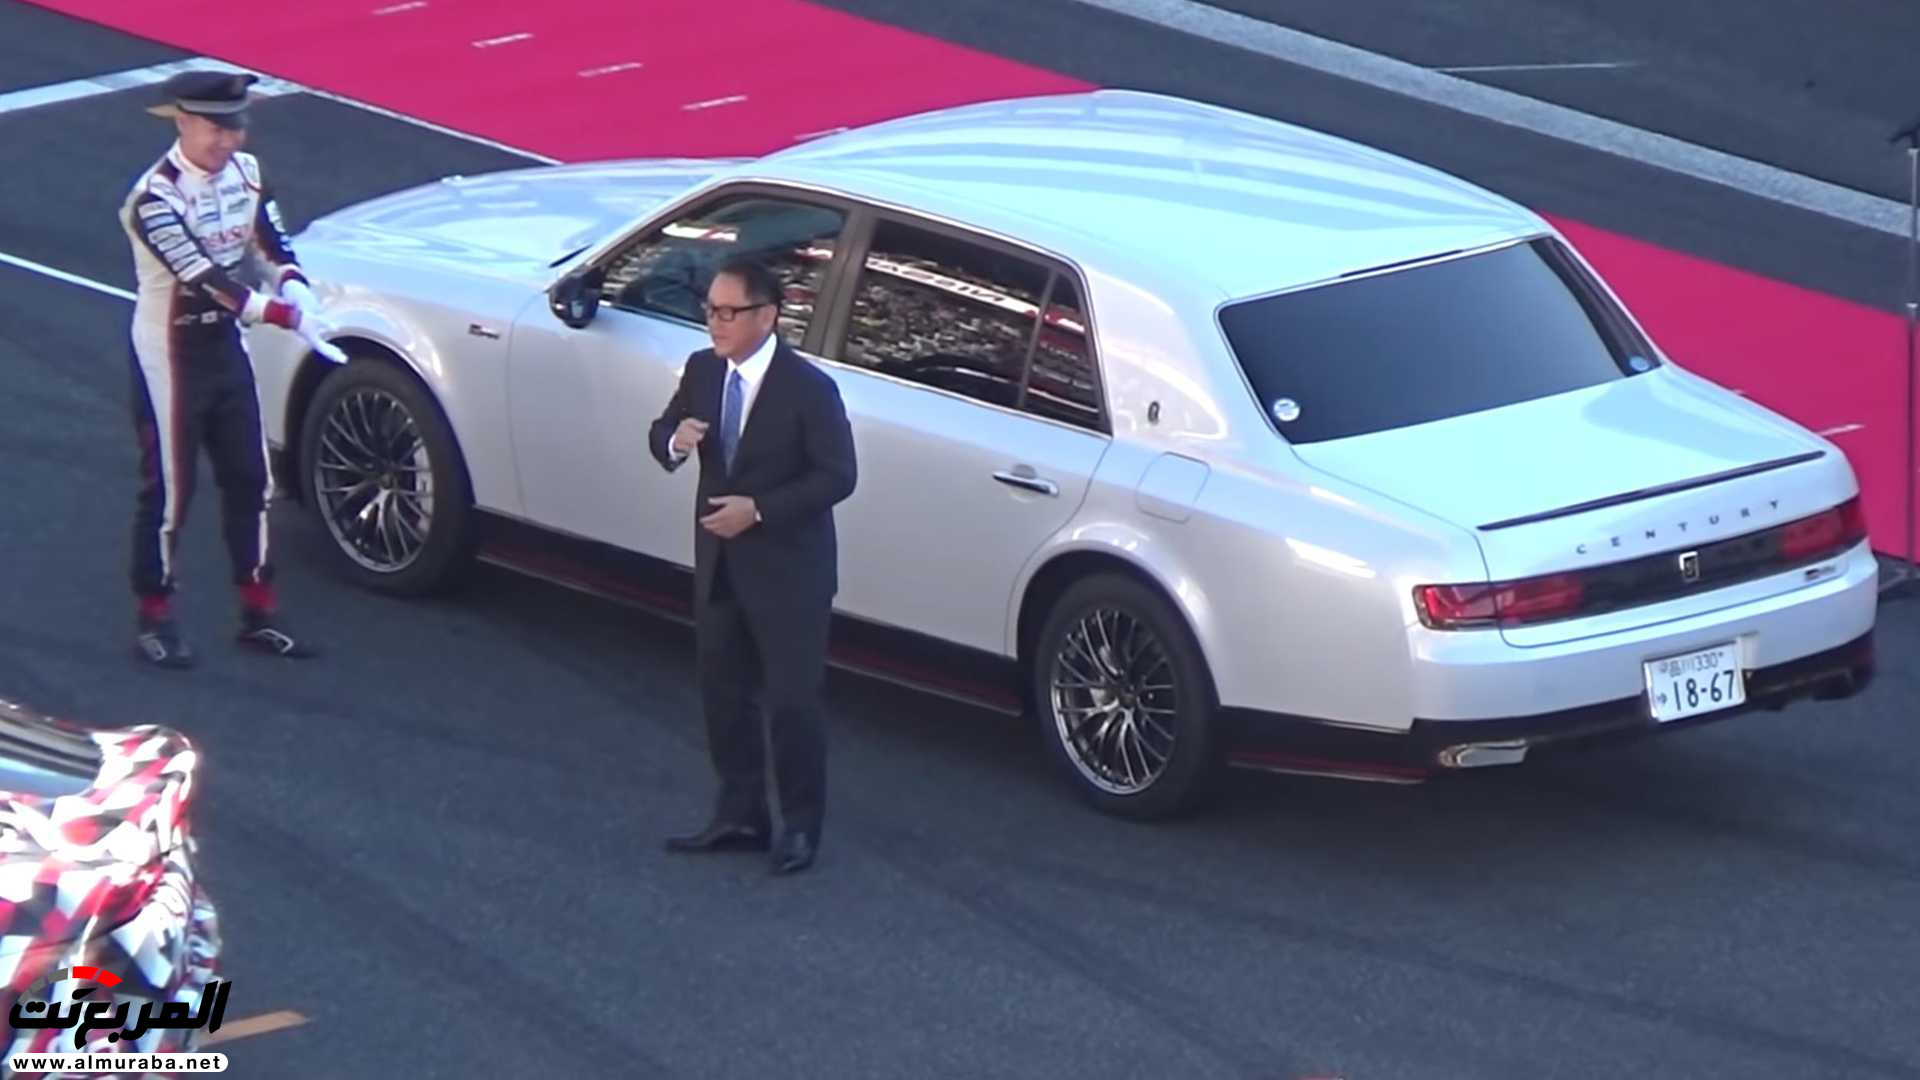 "بالفيديو" رئيس تويوتا يتباهى بسيارته الفاخرة على المضمار 53